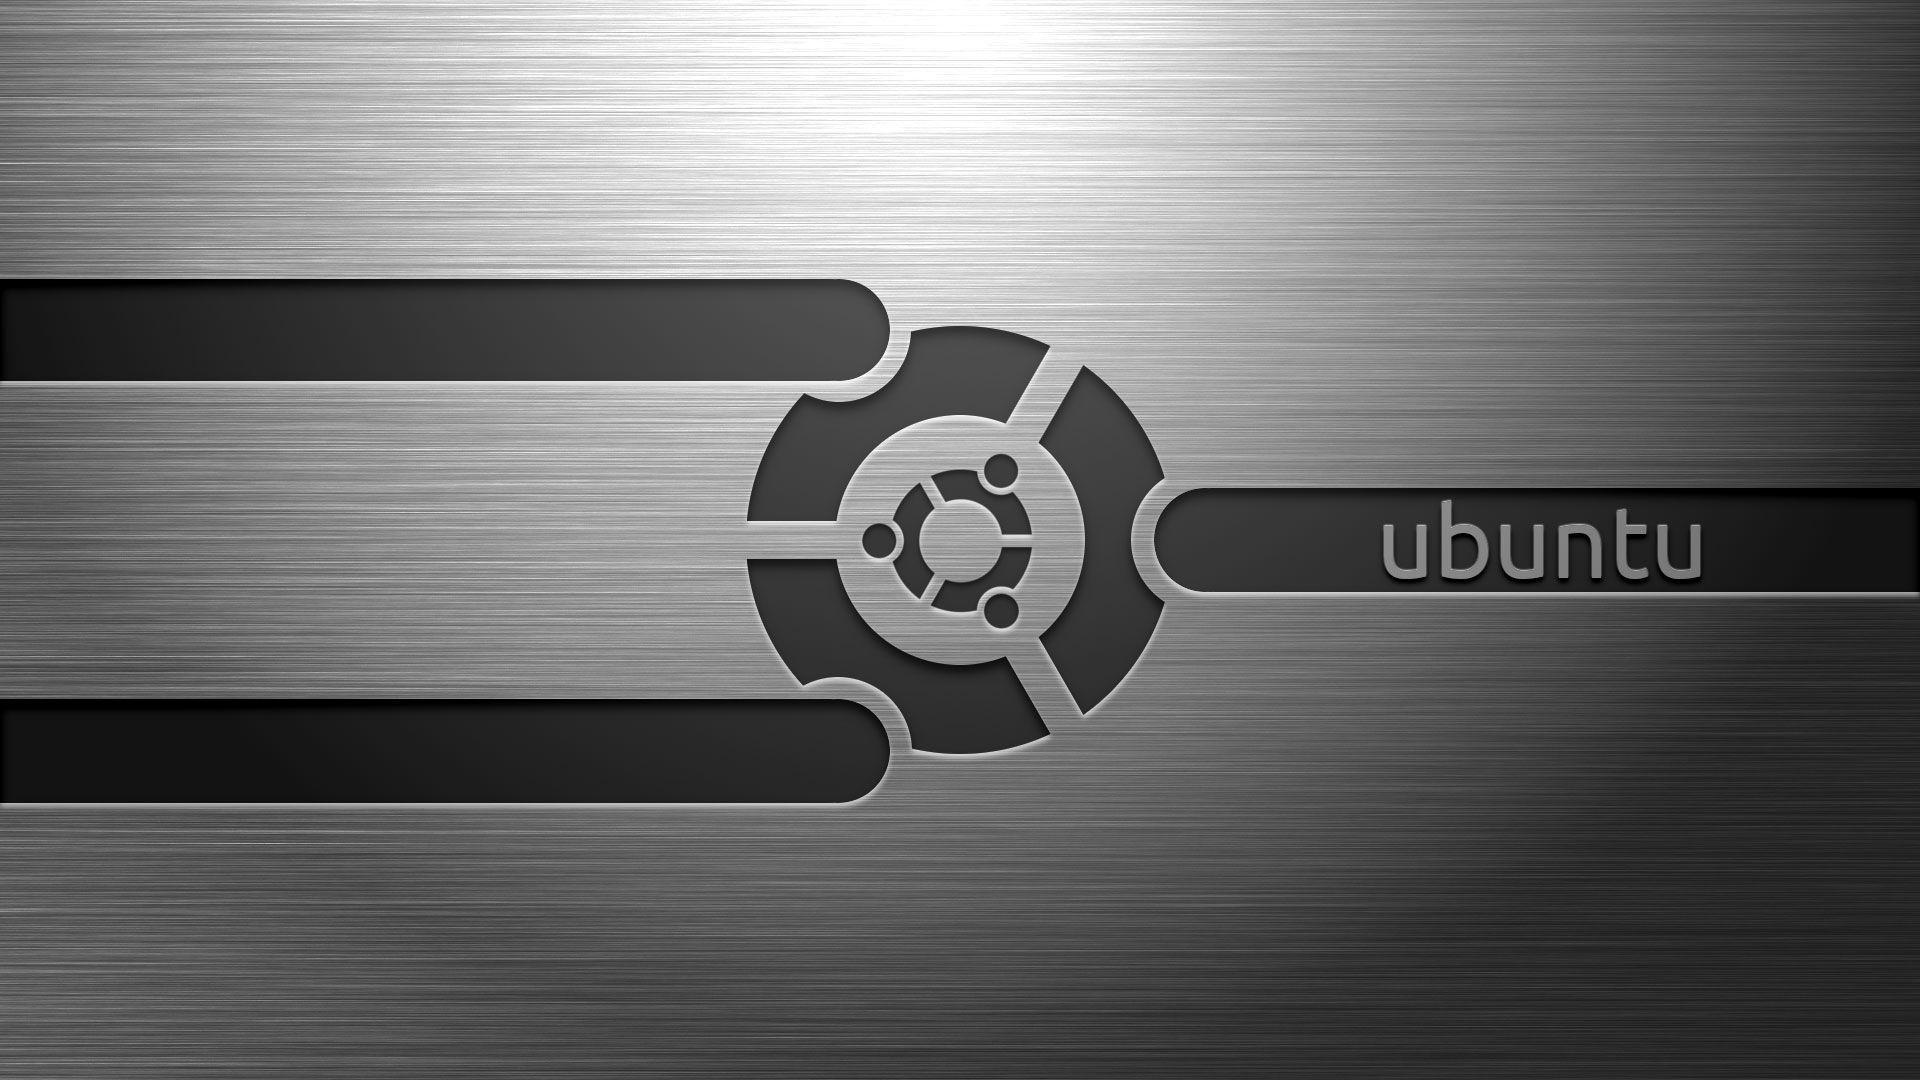 Ubuntu HD Wallpaper. fbpapa